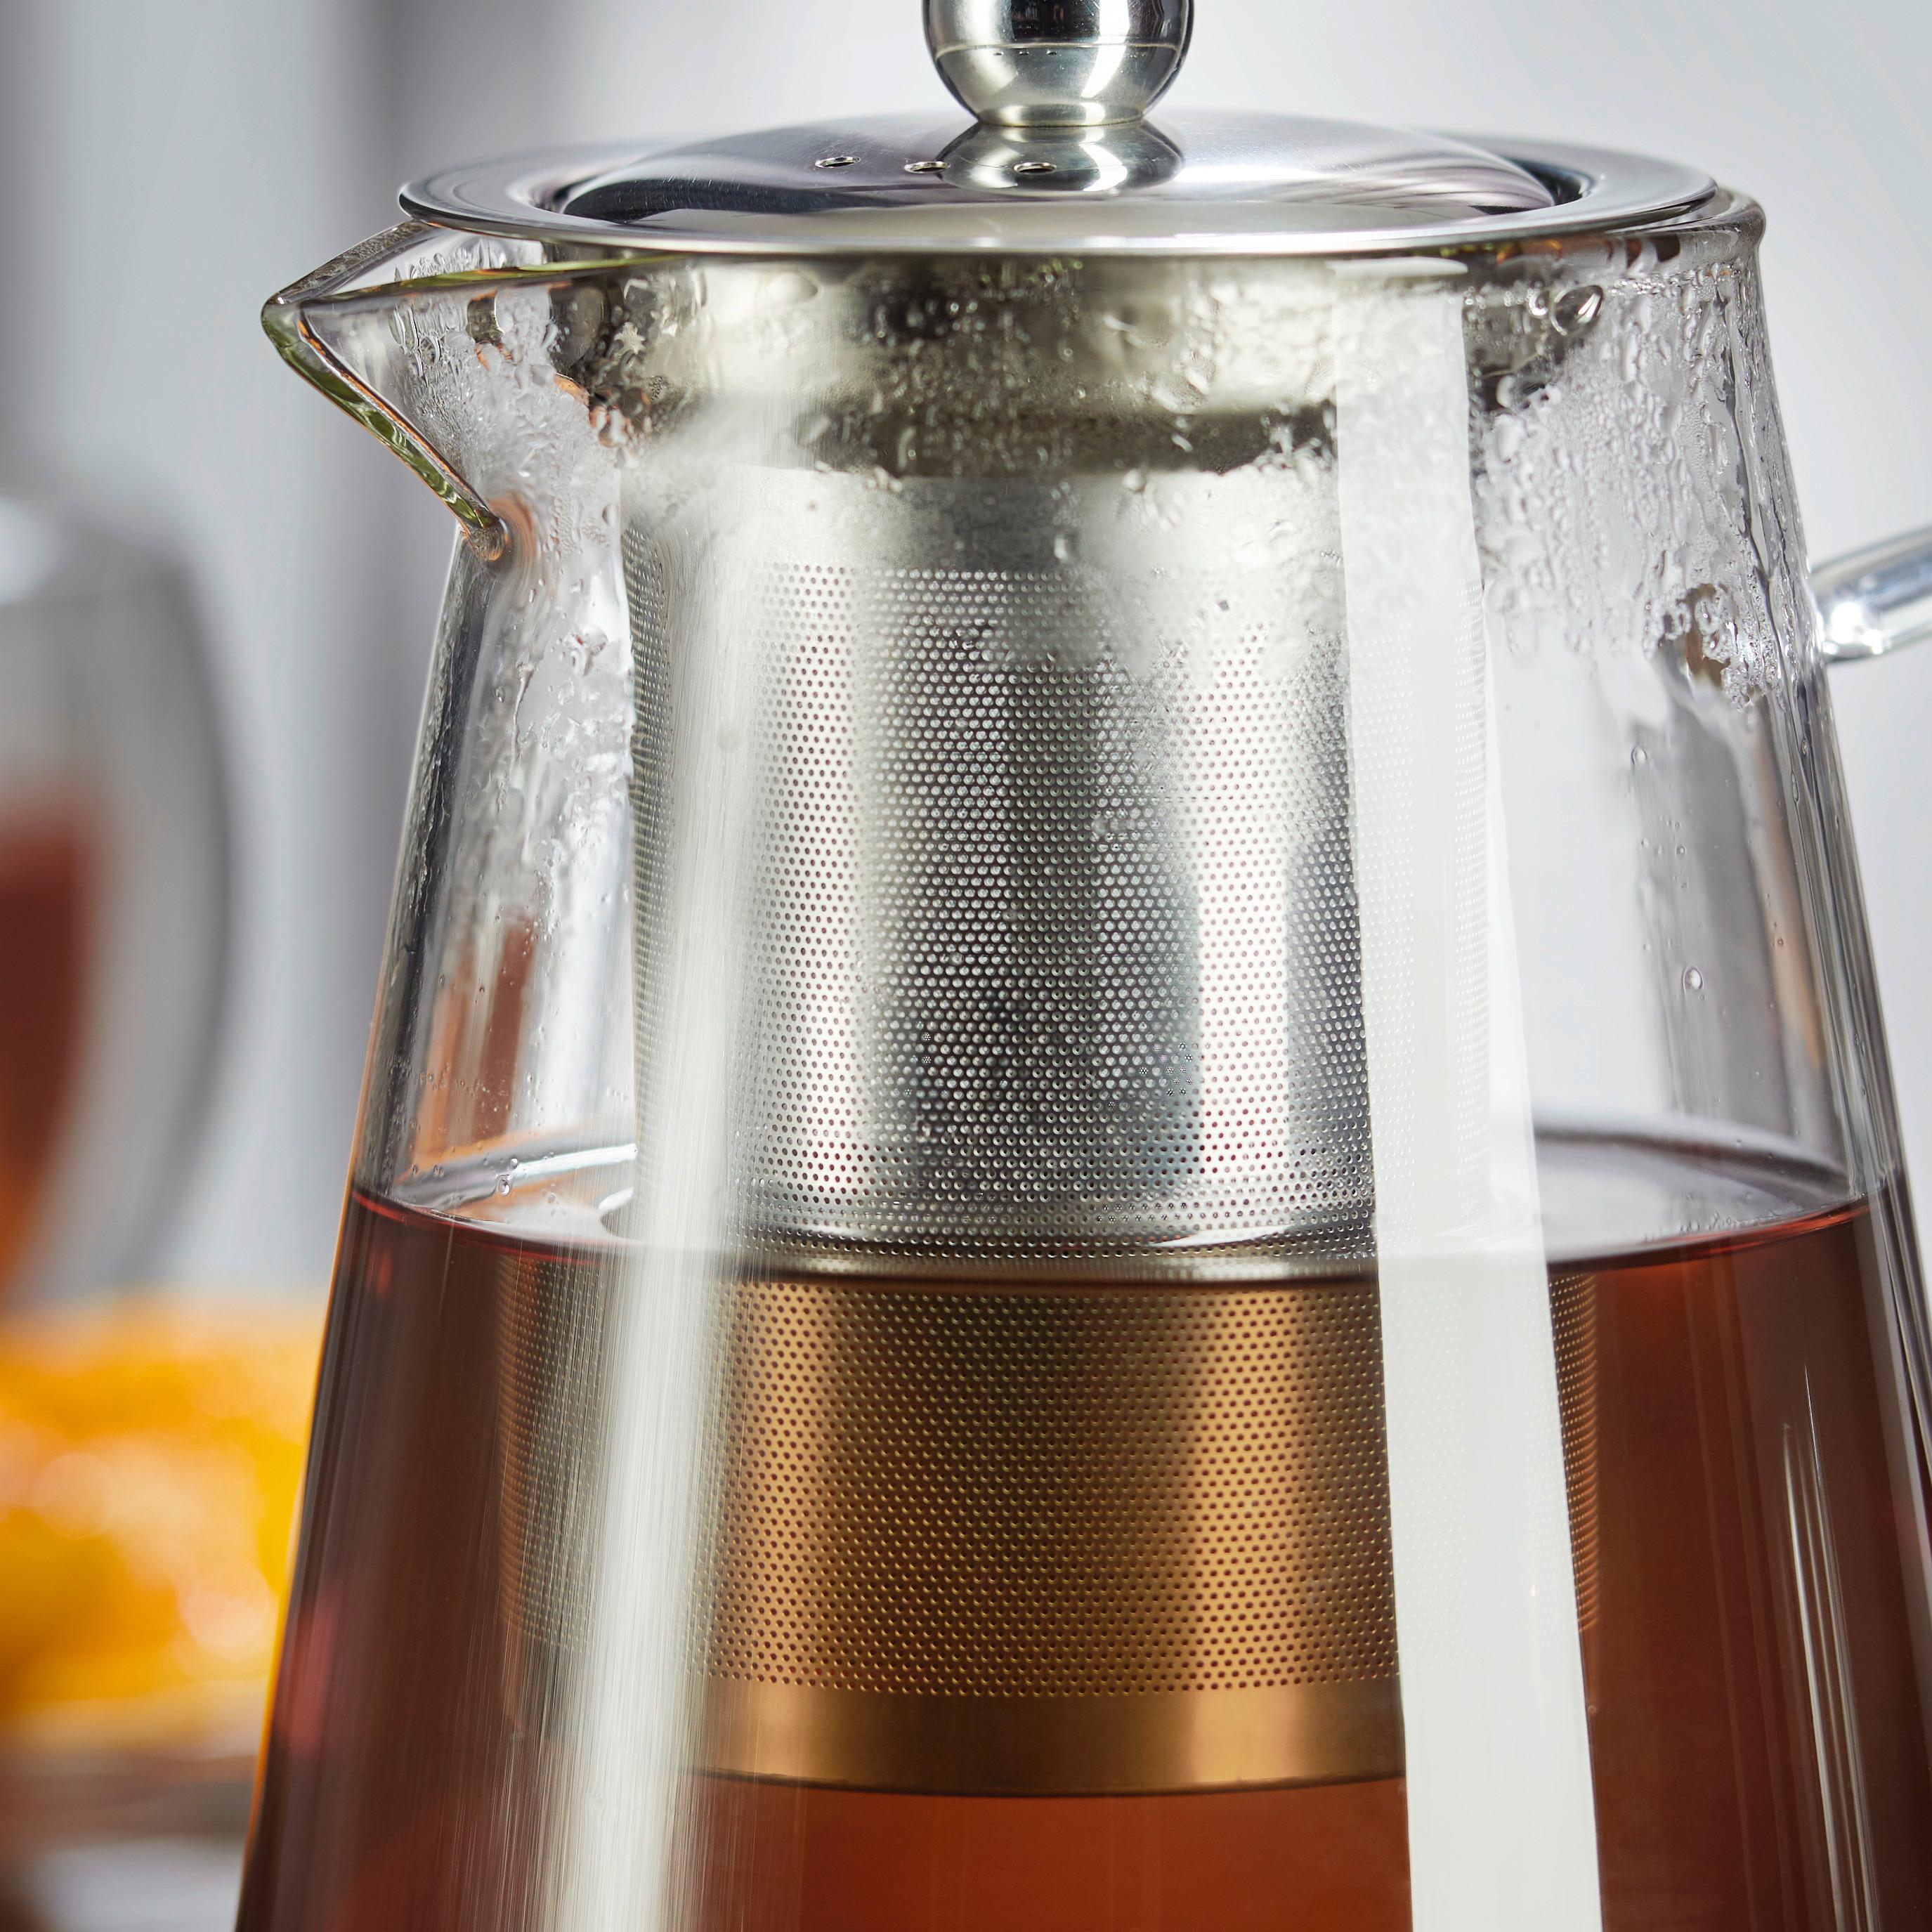 Vrč Za Čaj Tea Fusion - barve nerjavečega jekla/prozorno, Moderno, kovina/steklo (11,5/17cm) - Premium Living